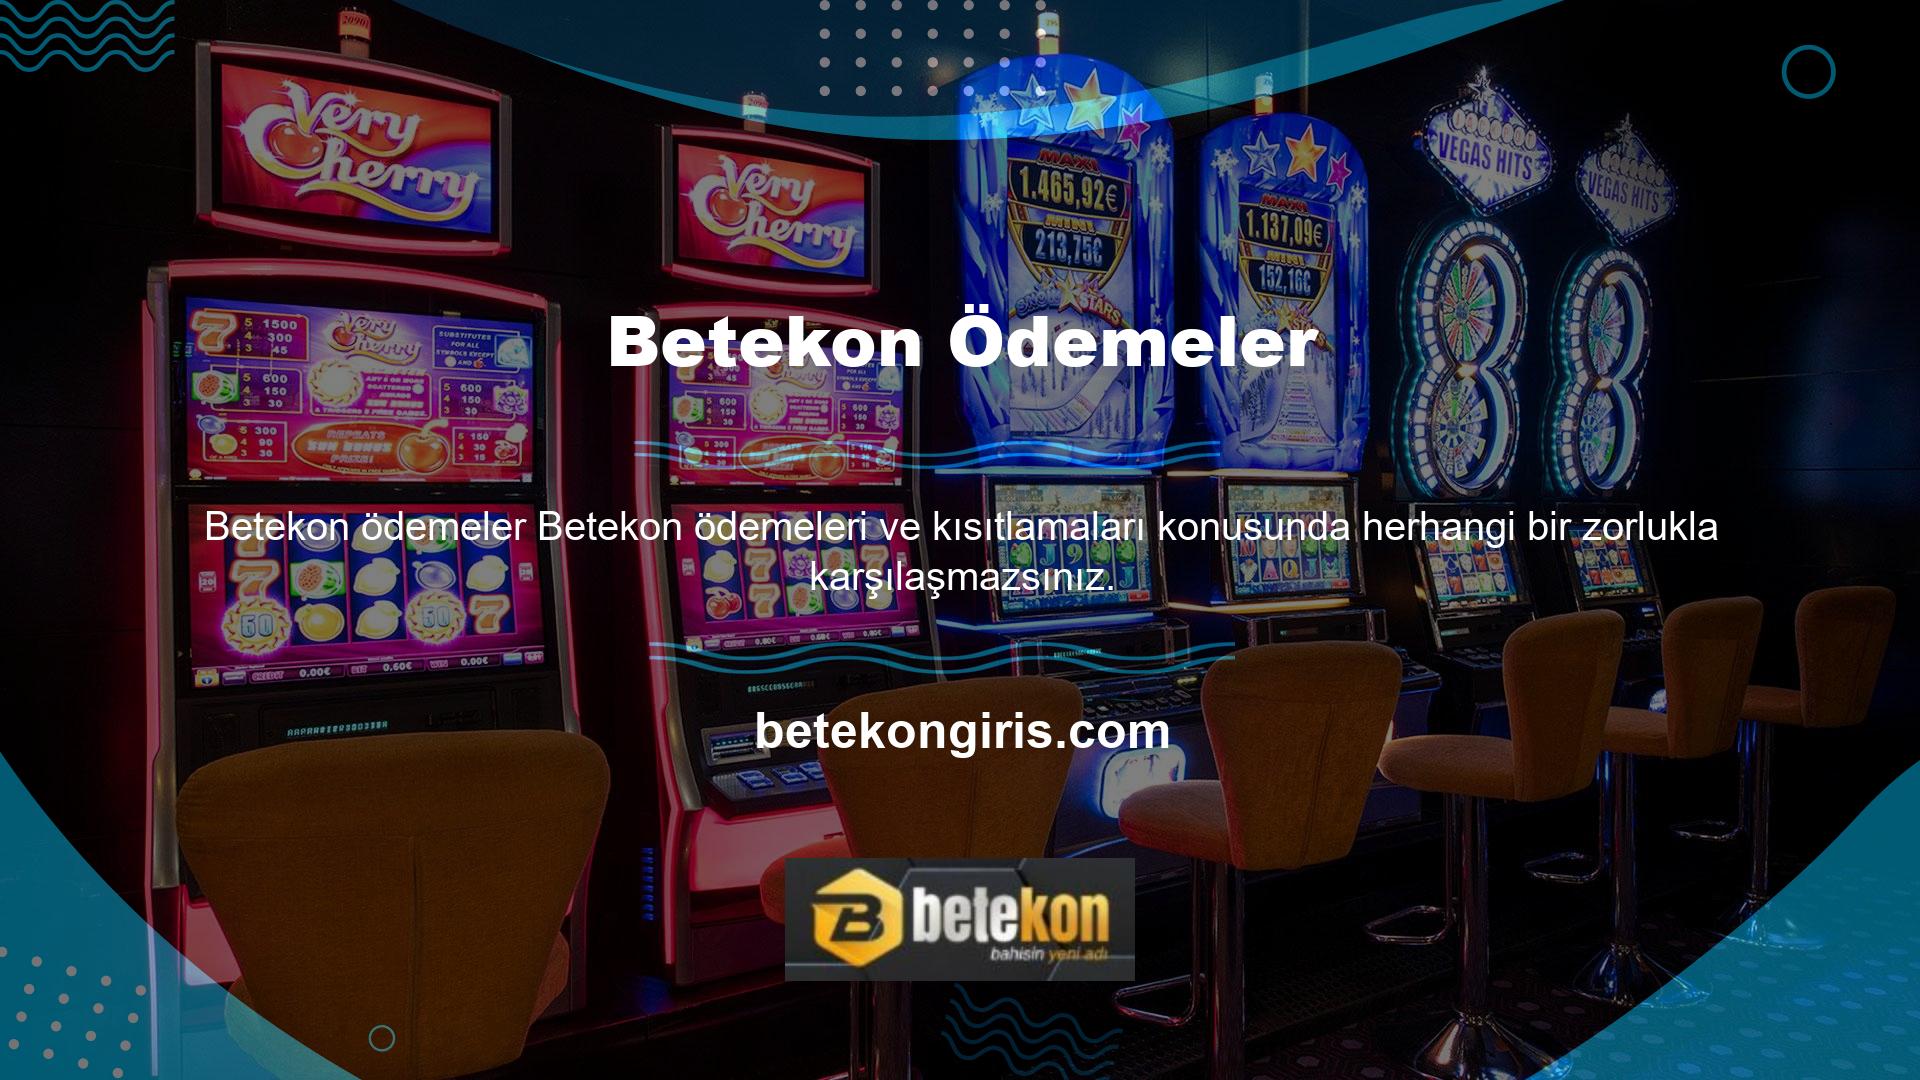 Casino siteleri, ödeme yöntemleri, oyun türleri, bonuslar, web sitesi temaları ve özellikleri gibi Betekon temaları için genellikle nasıl olumlu yorumlar topluyor? Yüzlerce farklı oyun mevcut ve slot oyunları hızlı kazanmaya yönelik basit bir yaklaşım sunuyor